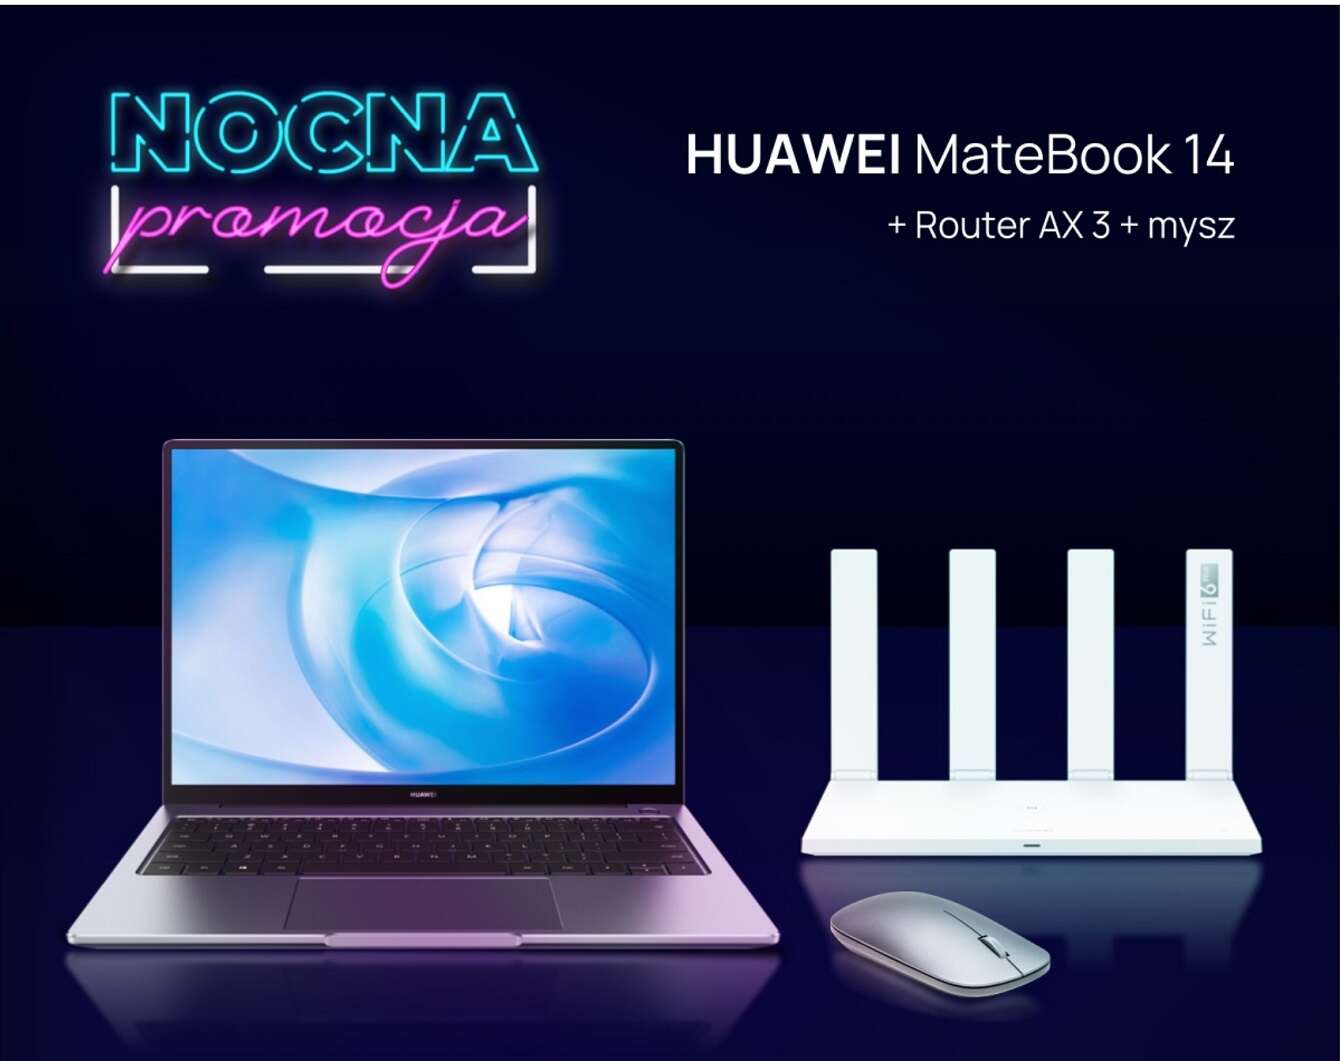 Nocna promocja na huawei.pl: Huawei MateBook 14 w świetnej cenie!